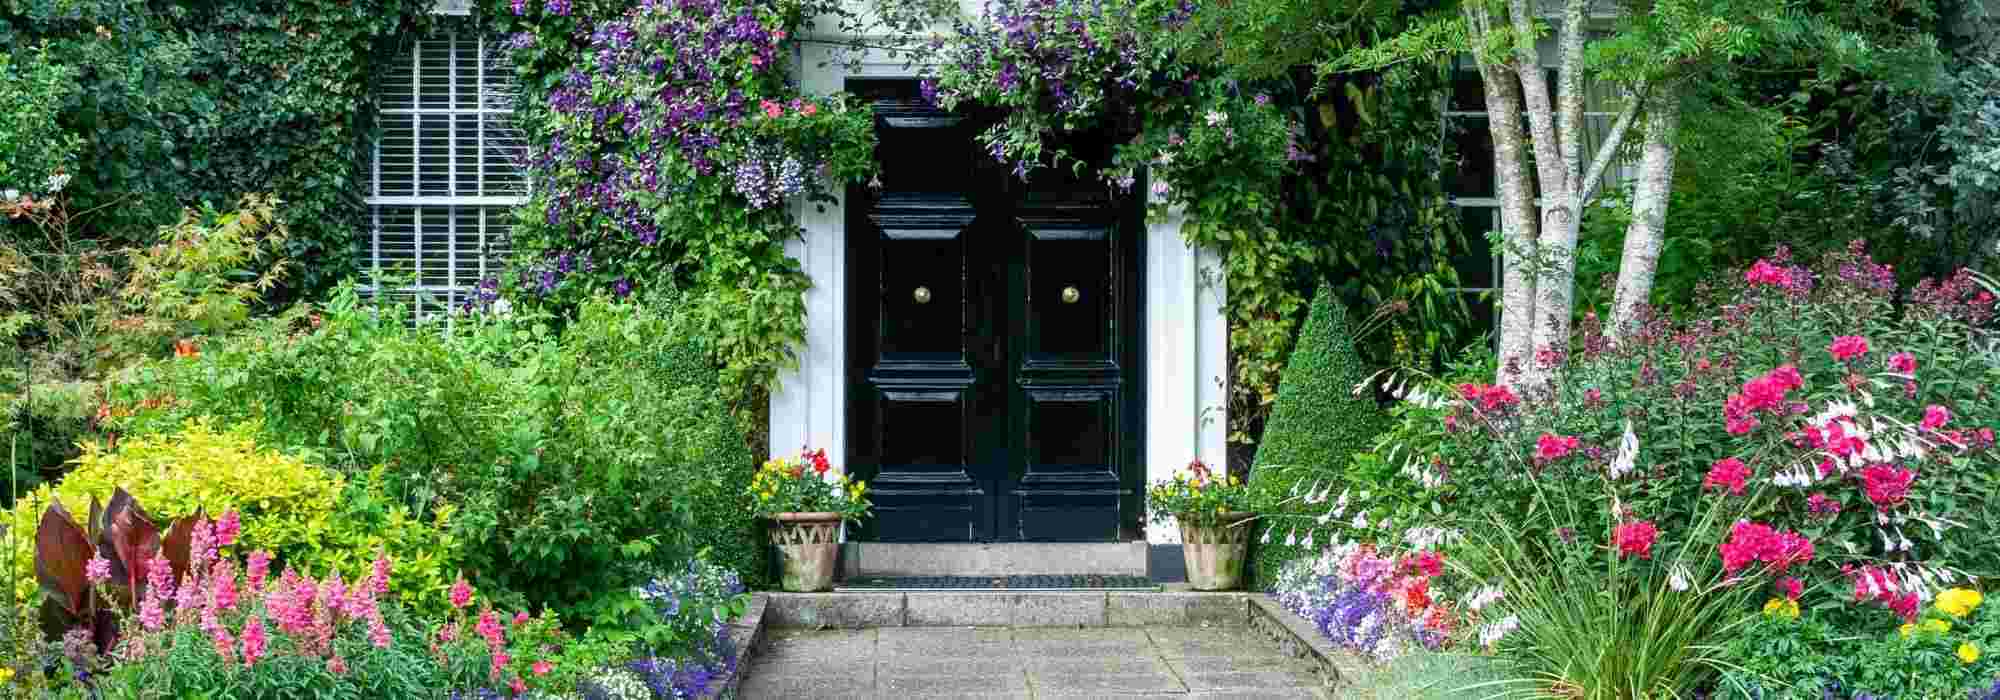 5 Conseils pour rentrer les plantes d'extérieur dans la maison pour l'hiver